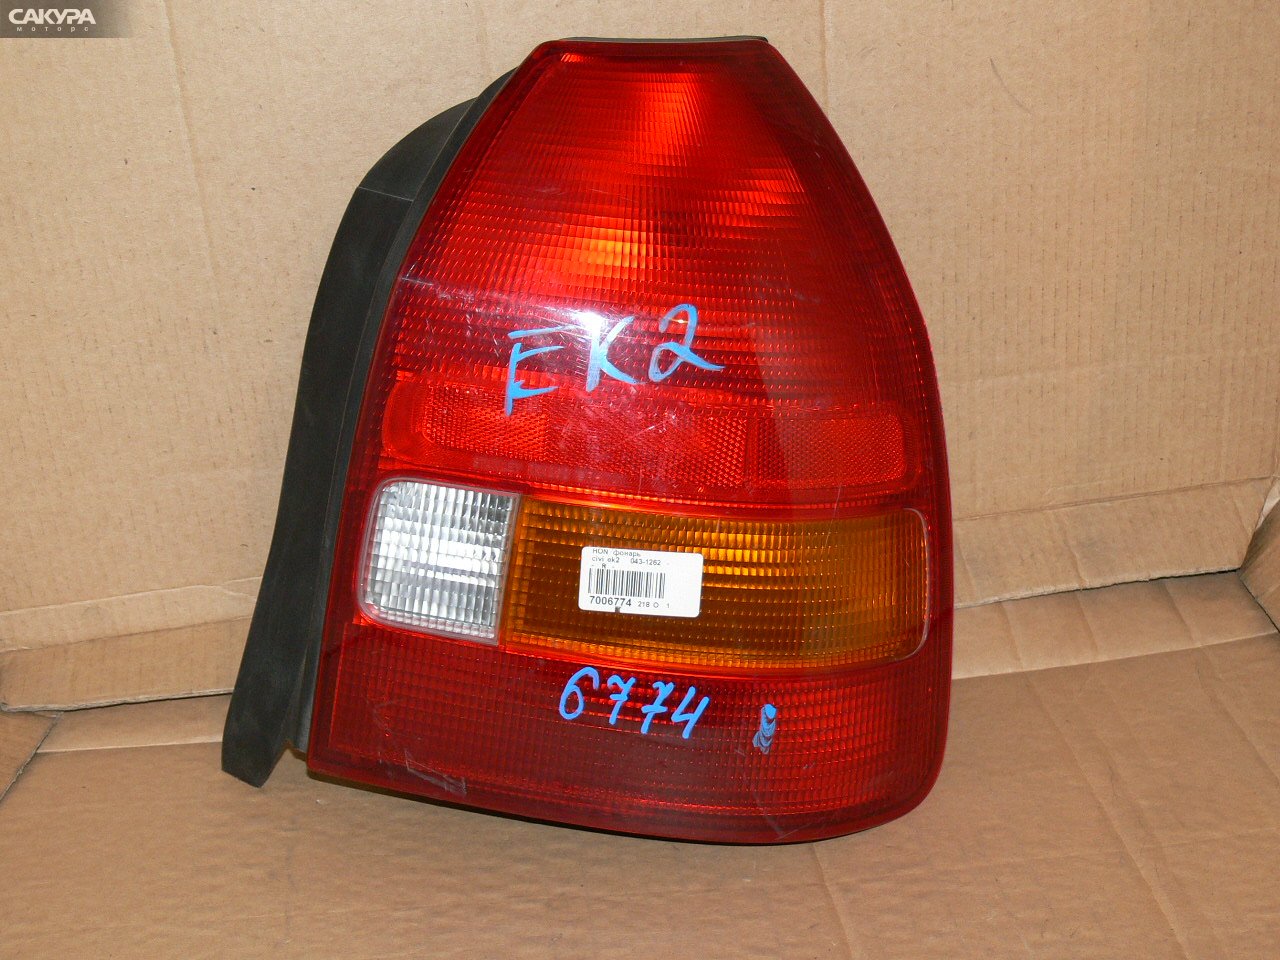 Фонарь стоп-сигнала правый Honda Civic EK2 043-1262: купить в Сакура Иркутск.